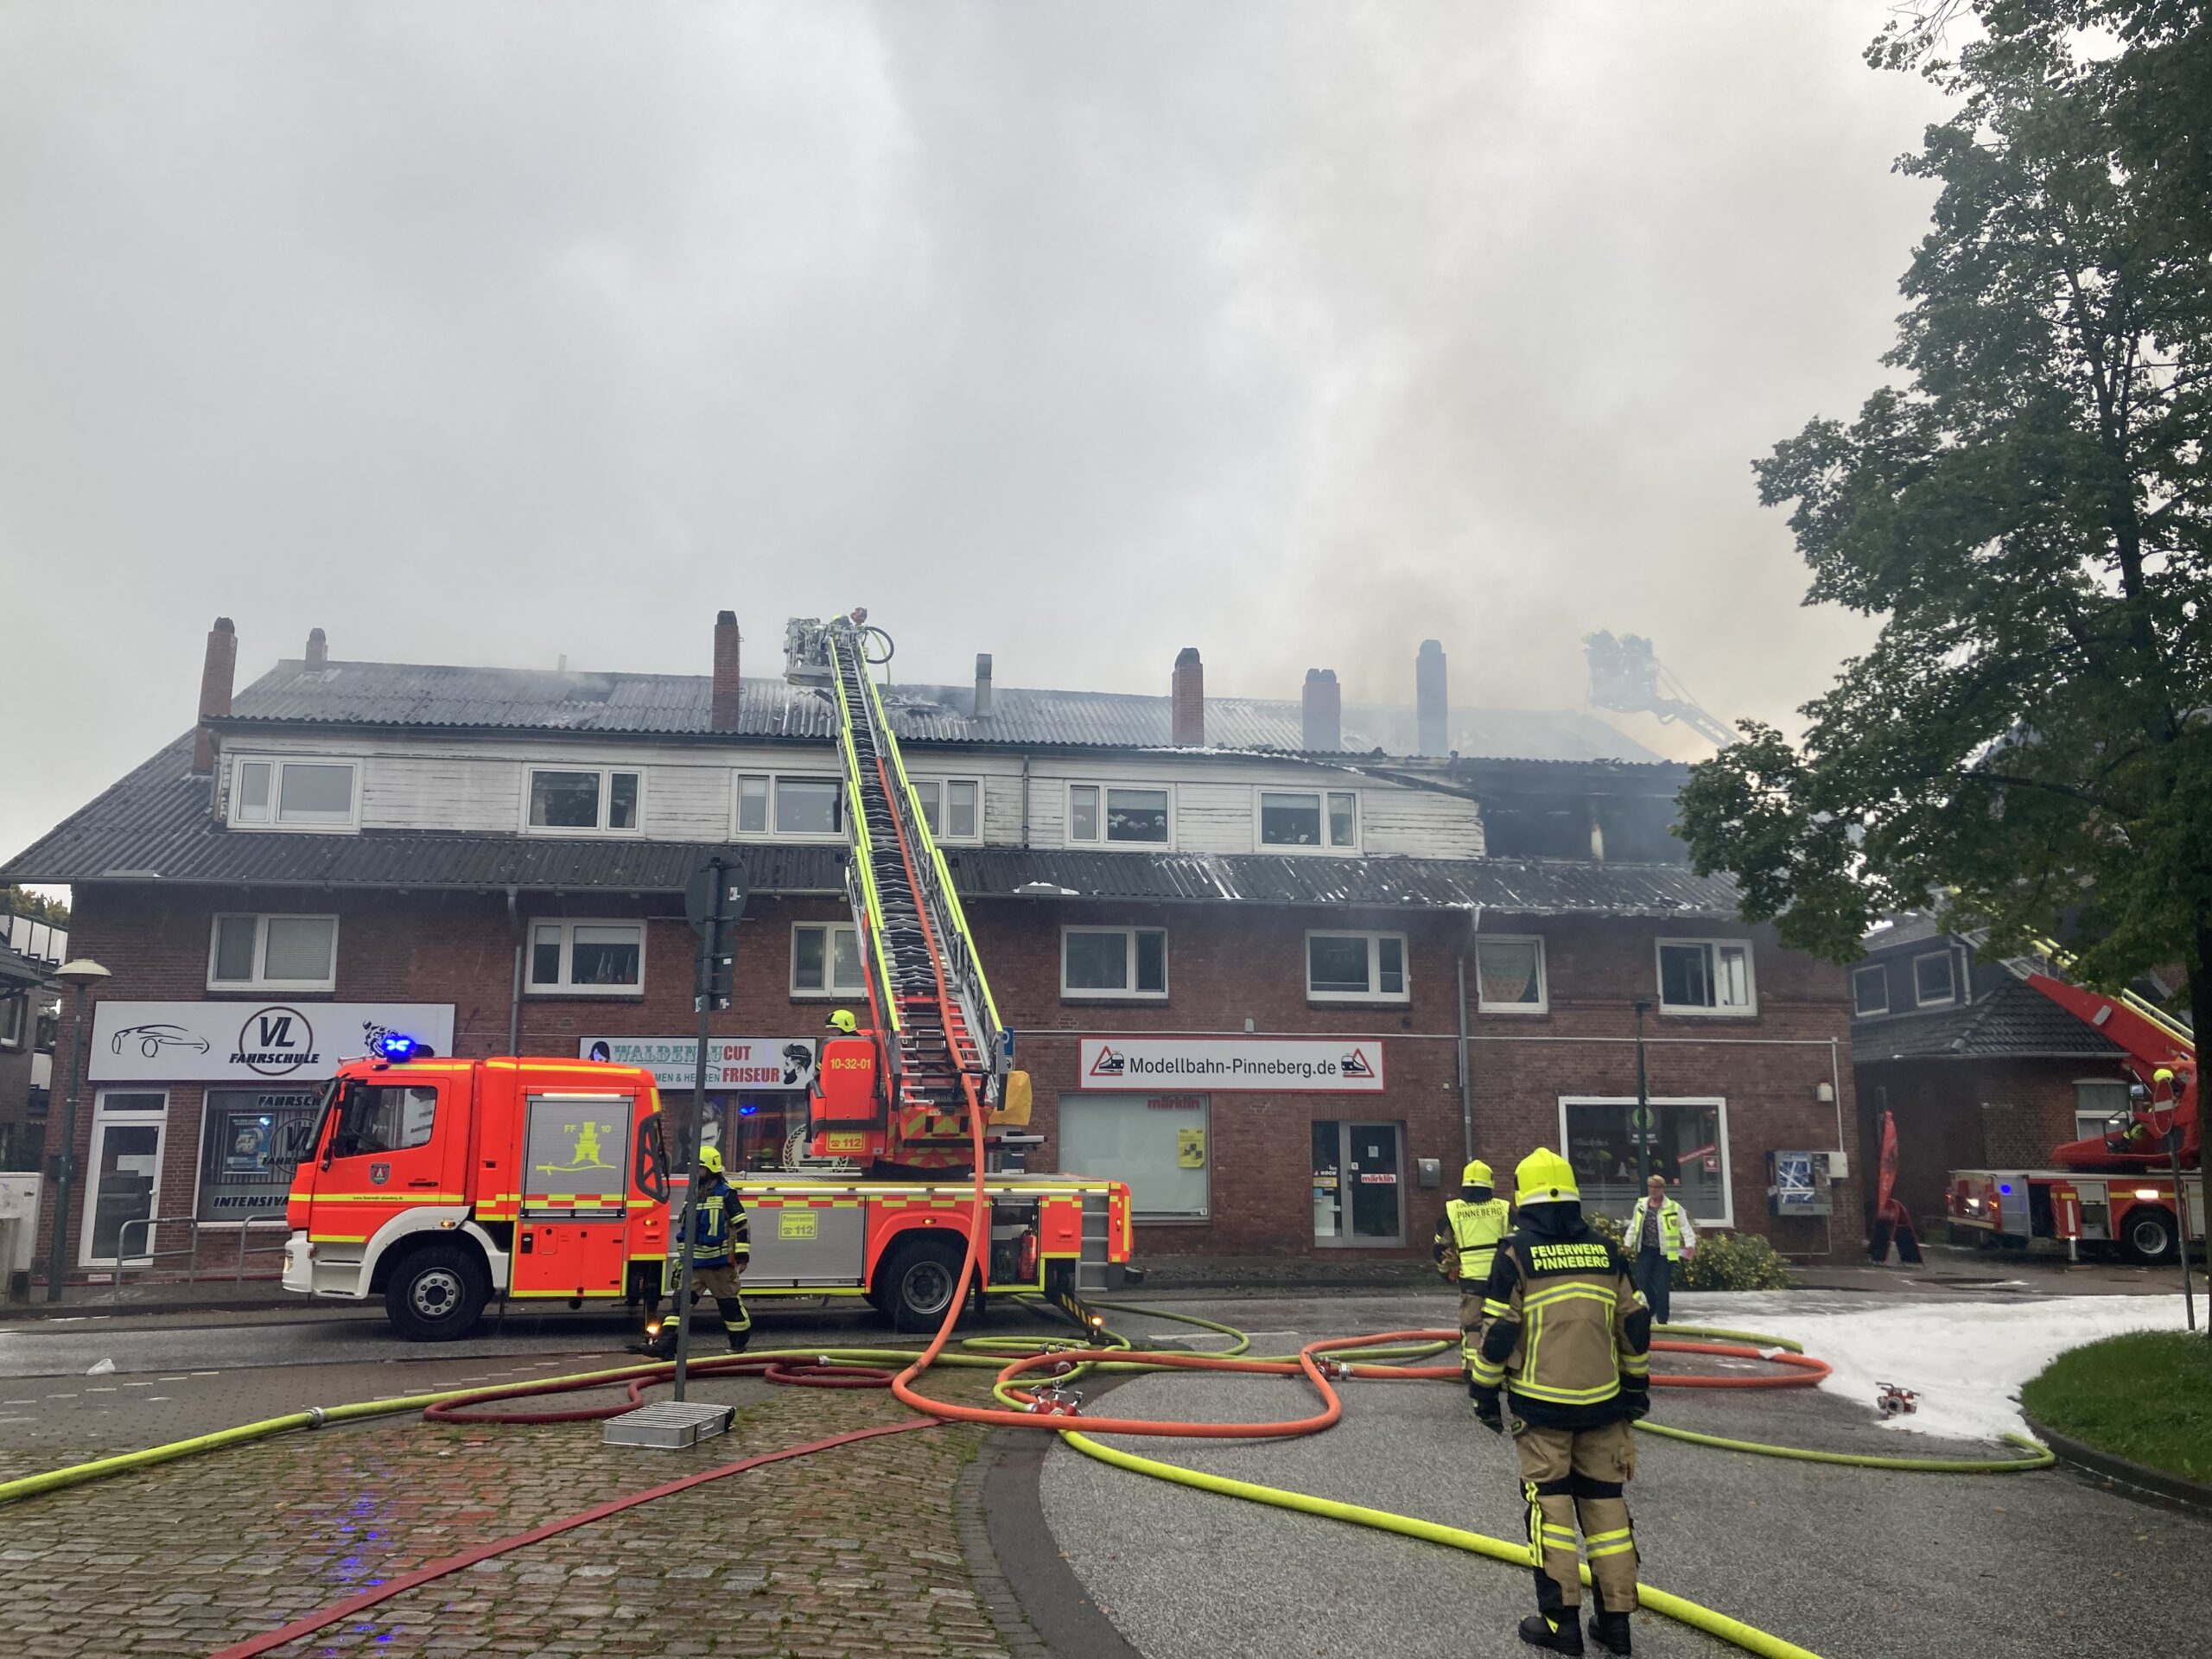 Dach von Wohnhaus in Flammen – mehr als 100 Retter in Pinneberg im Einsatz